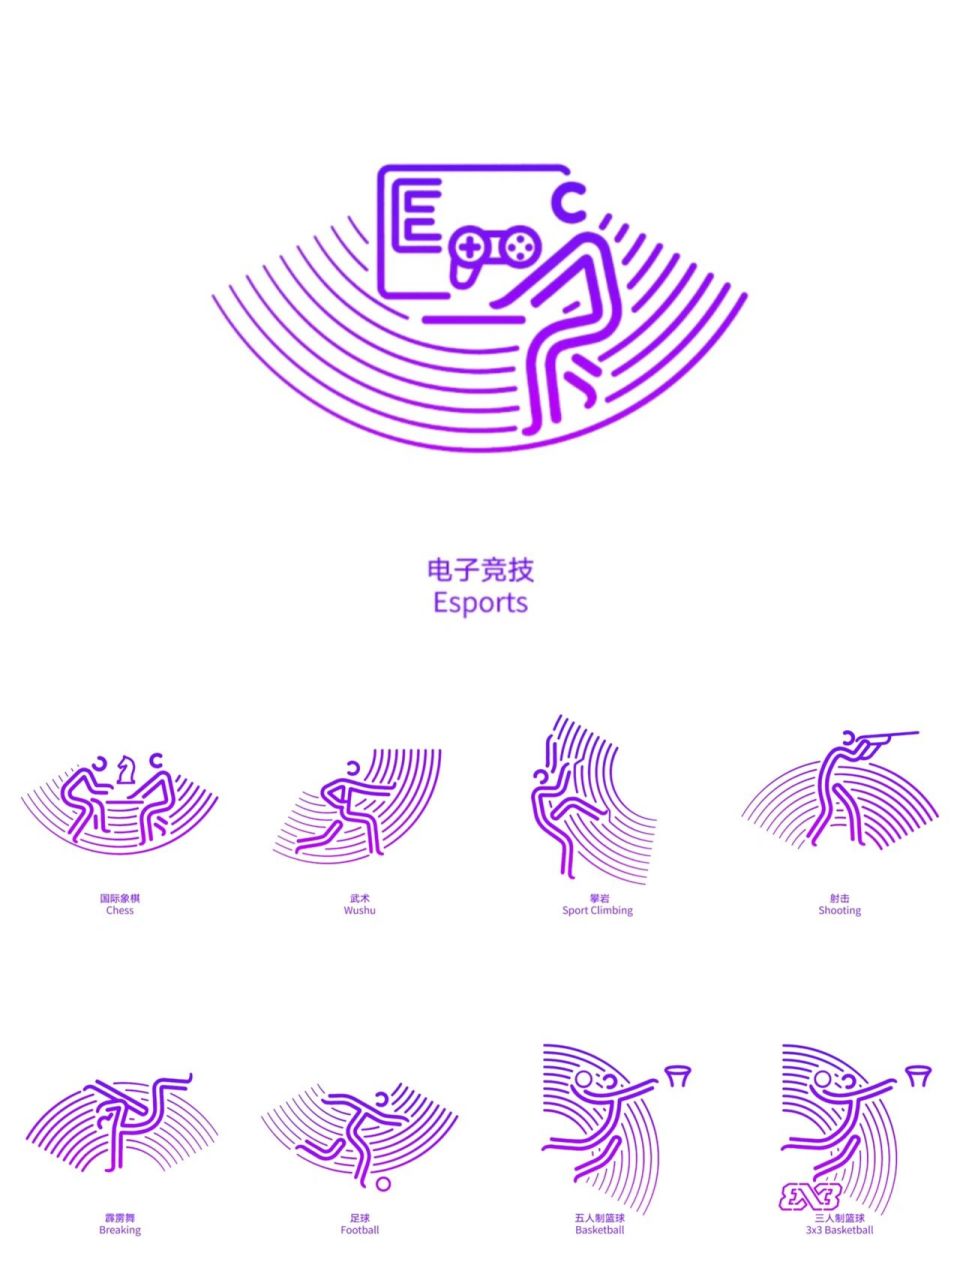 97揭秘杭州亚运会动态图标的设计幕后7515 99一个2秒的动态